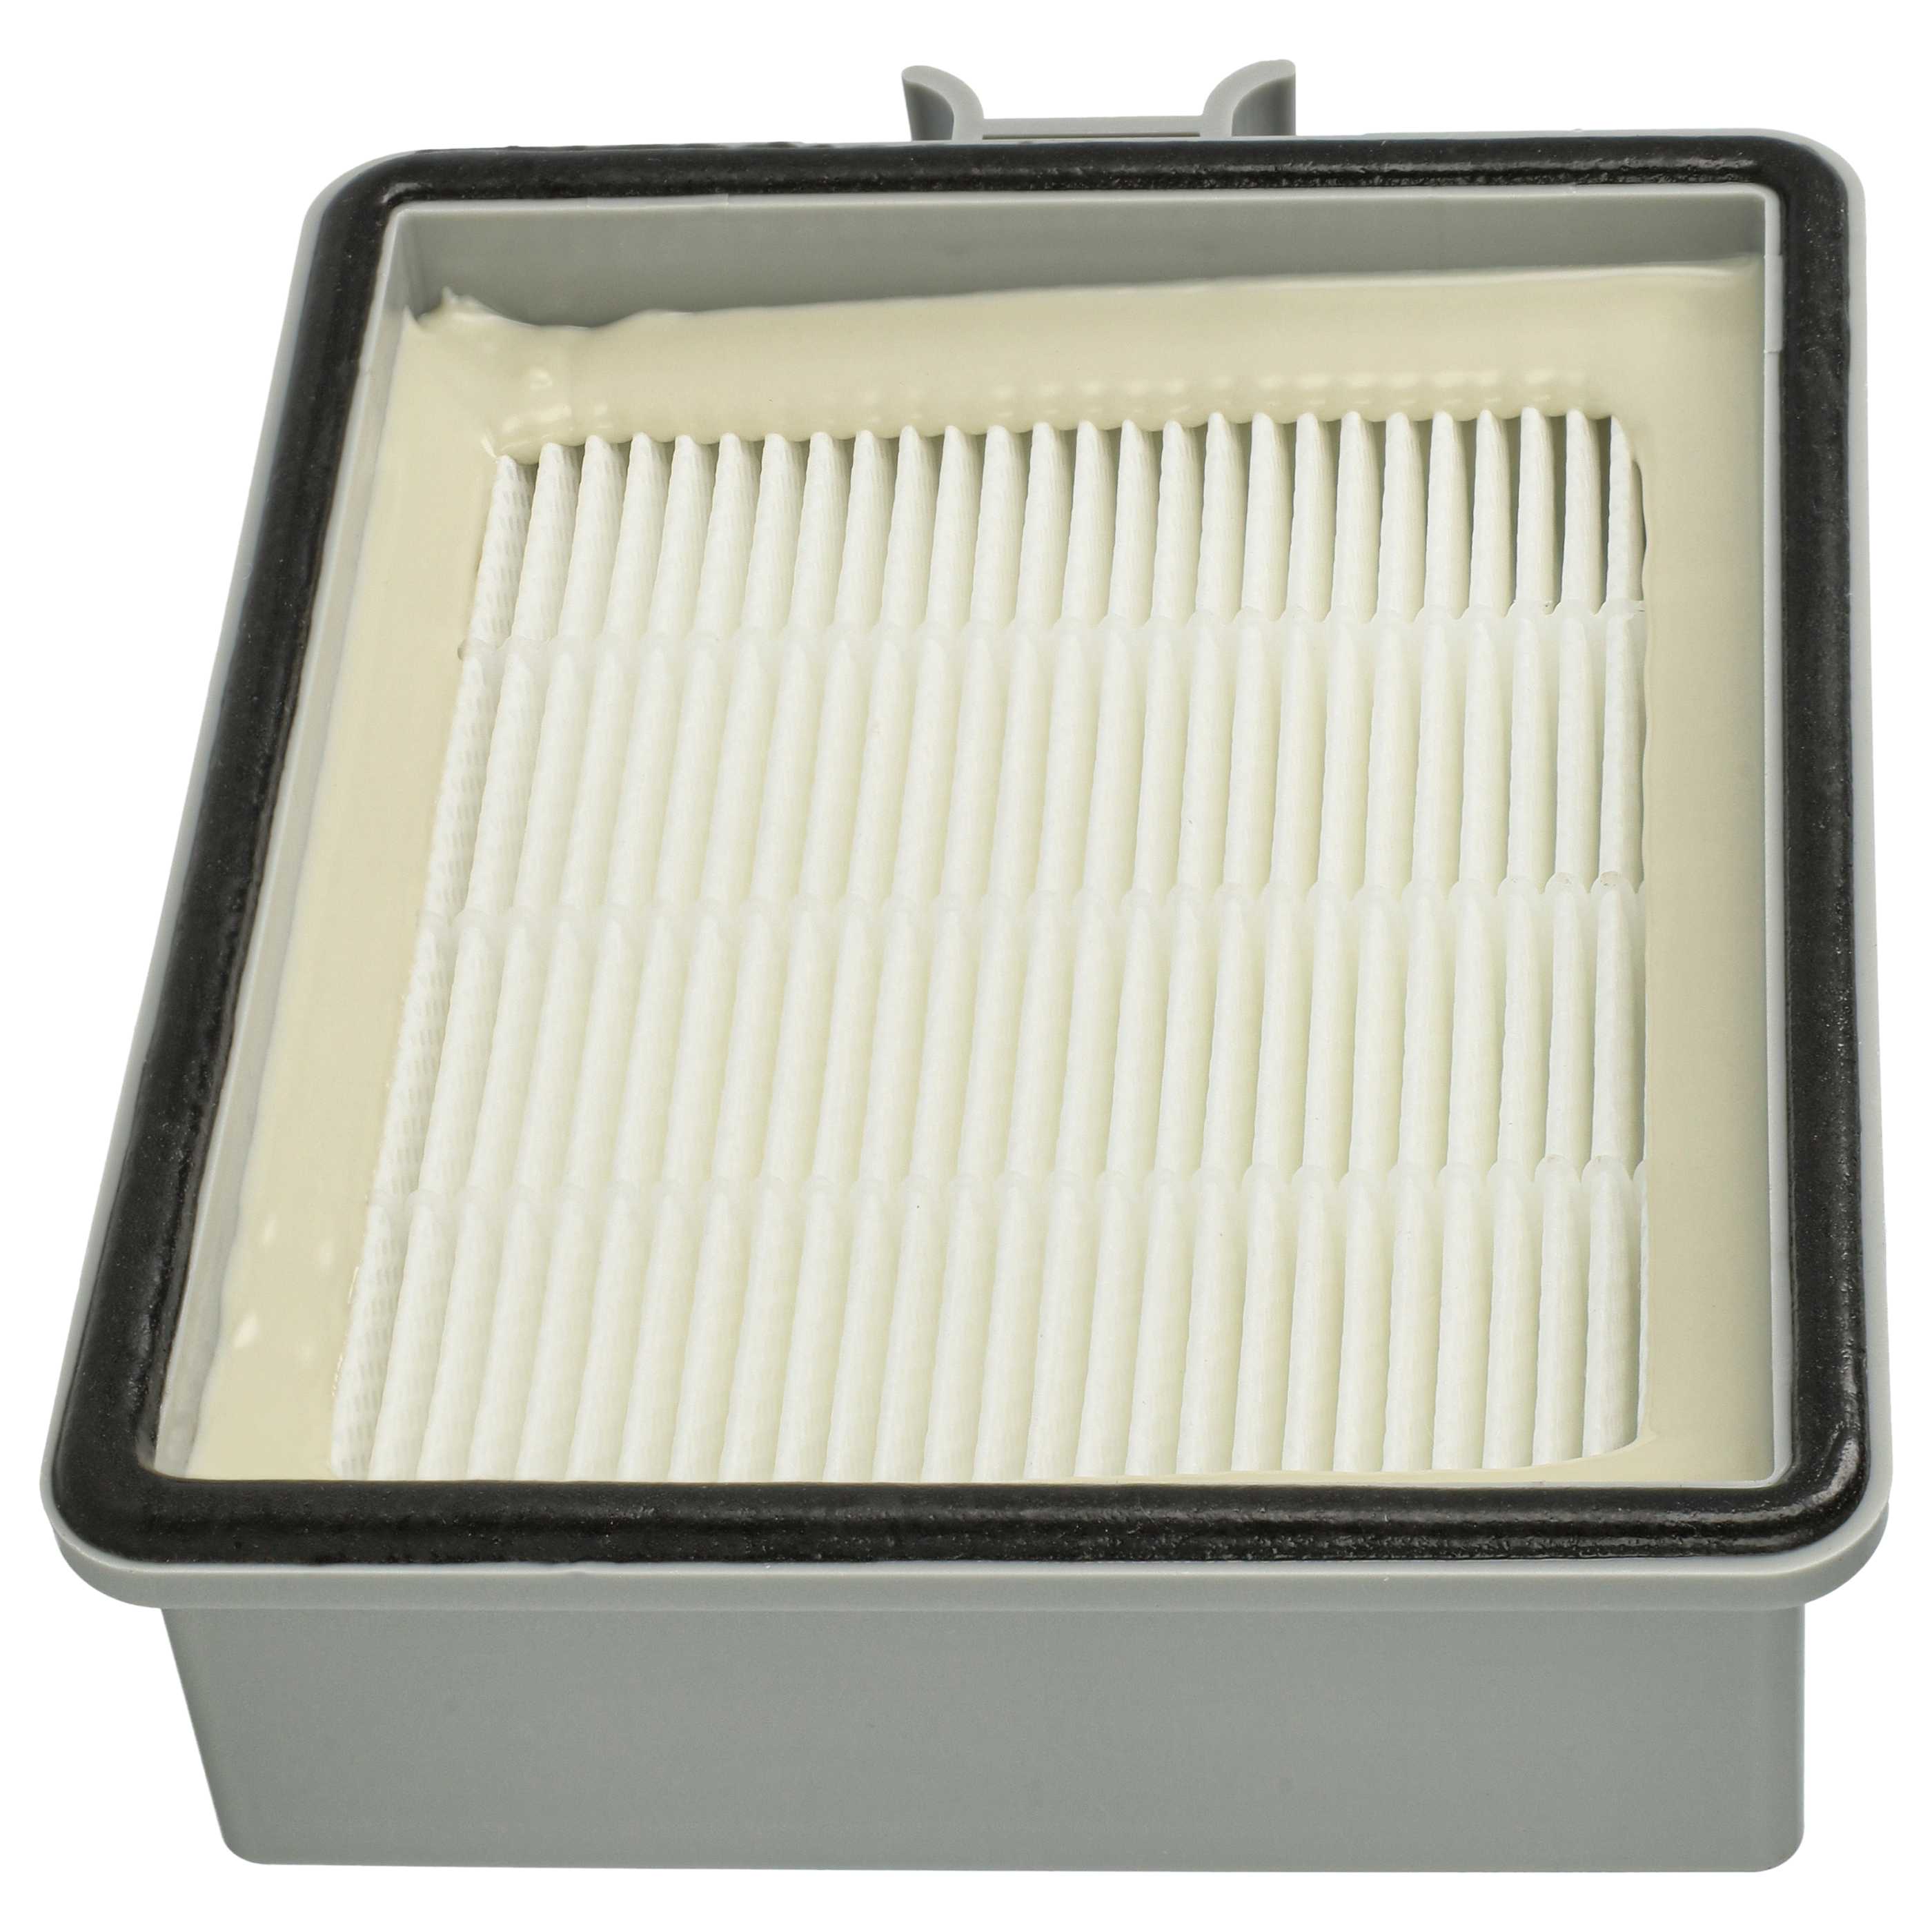 Filtro reemplaza Lux 11548202 para aspiradora - filtro salida del motor HEPA blanco / gris